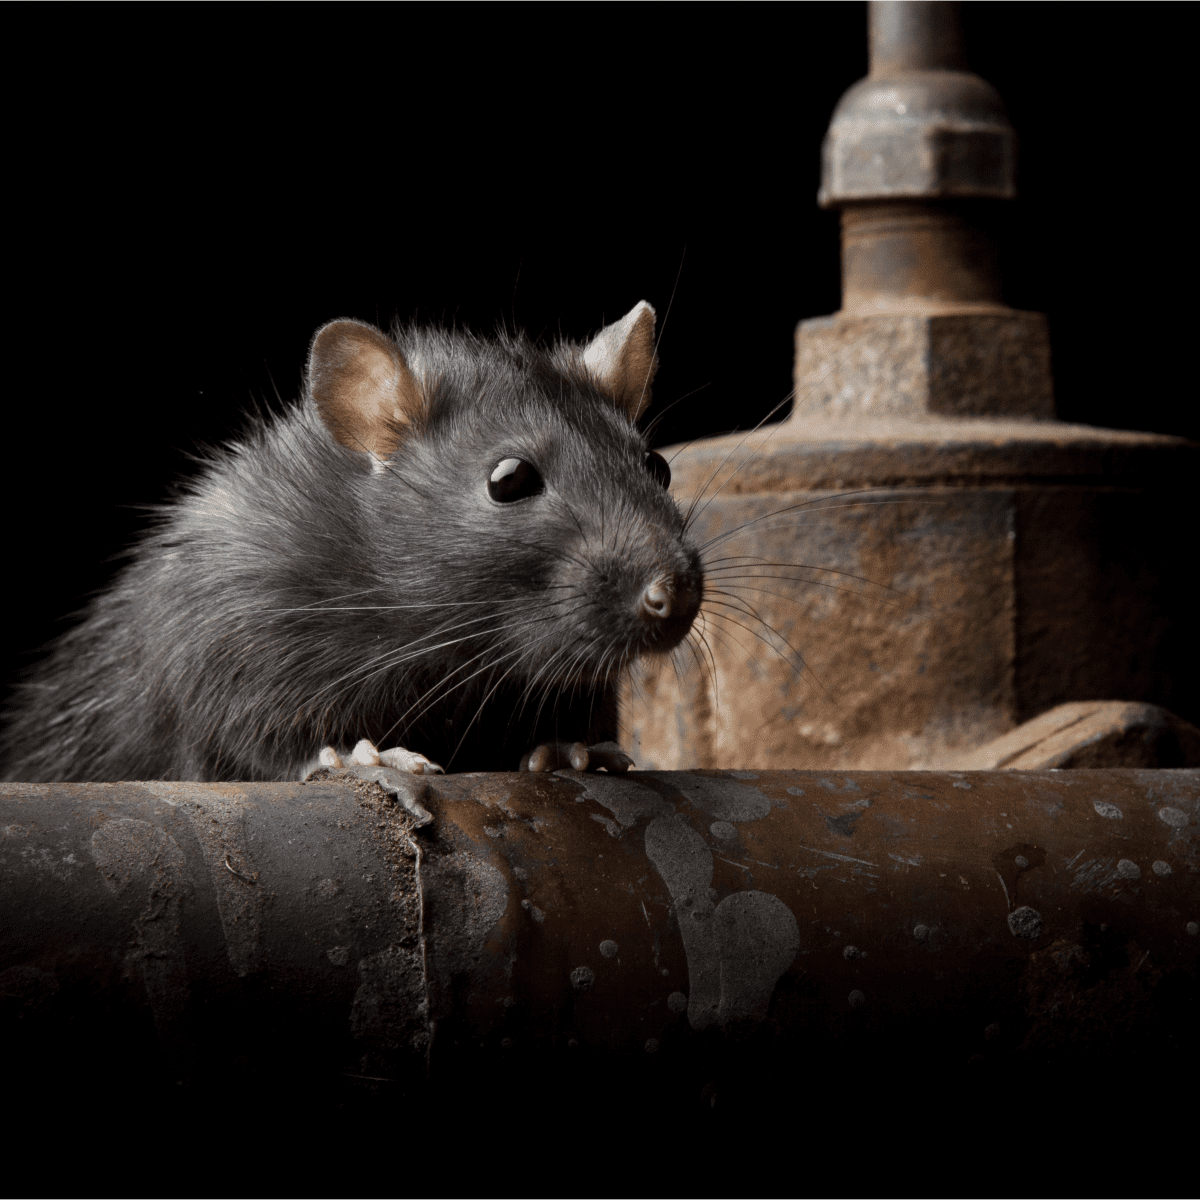 derreck furse recommends Whats A Hood Rat